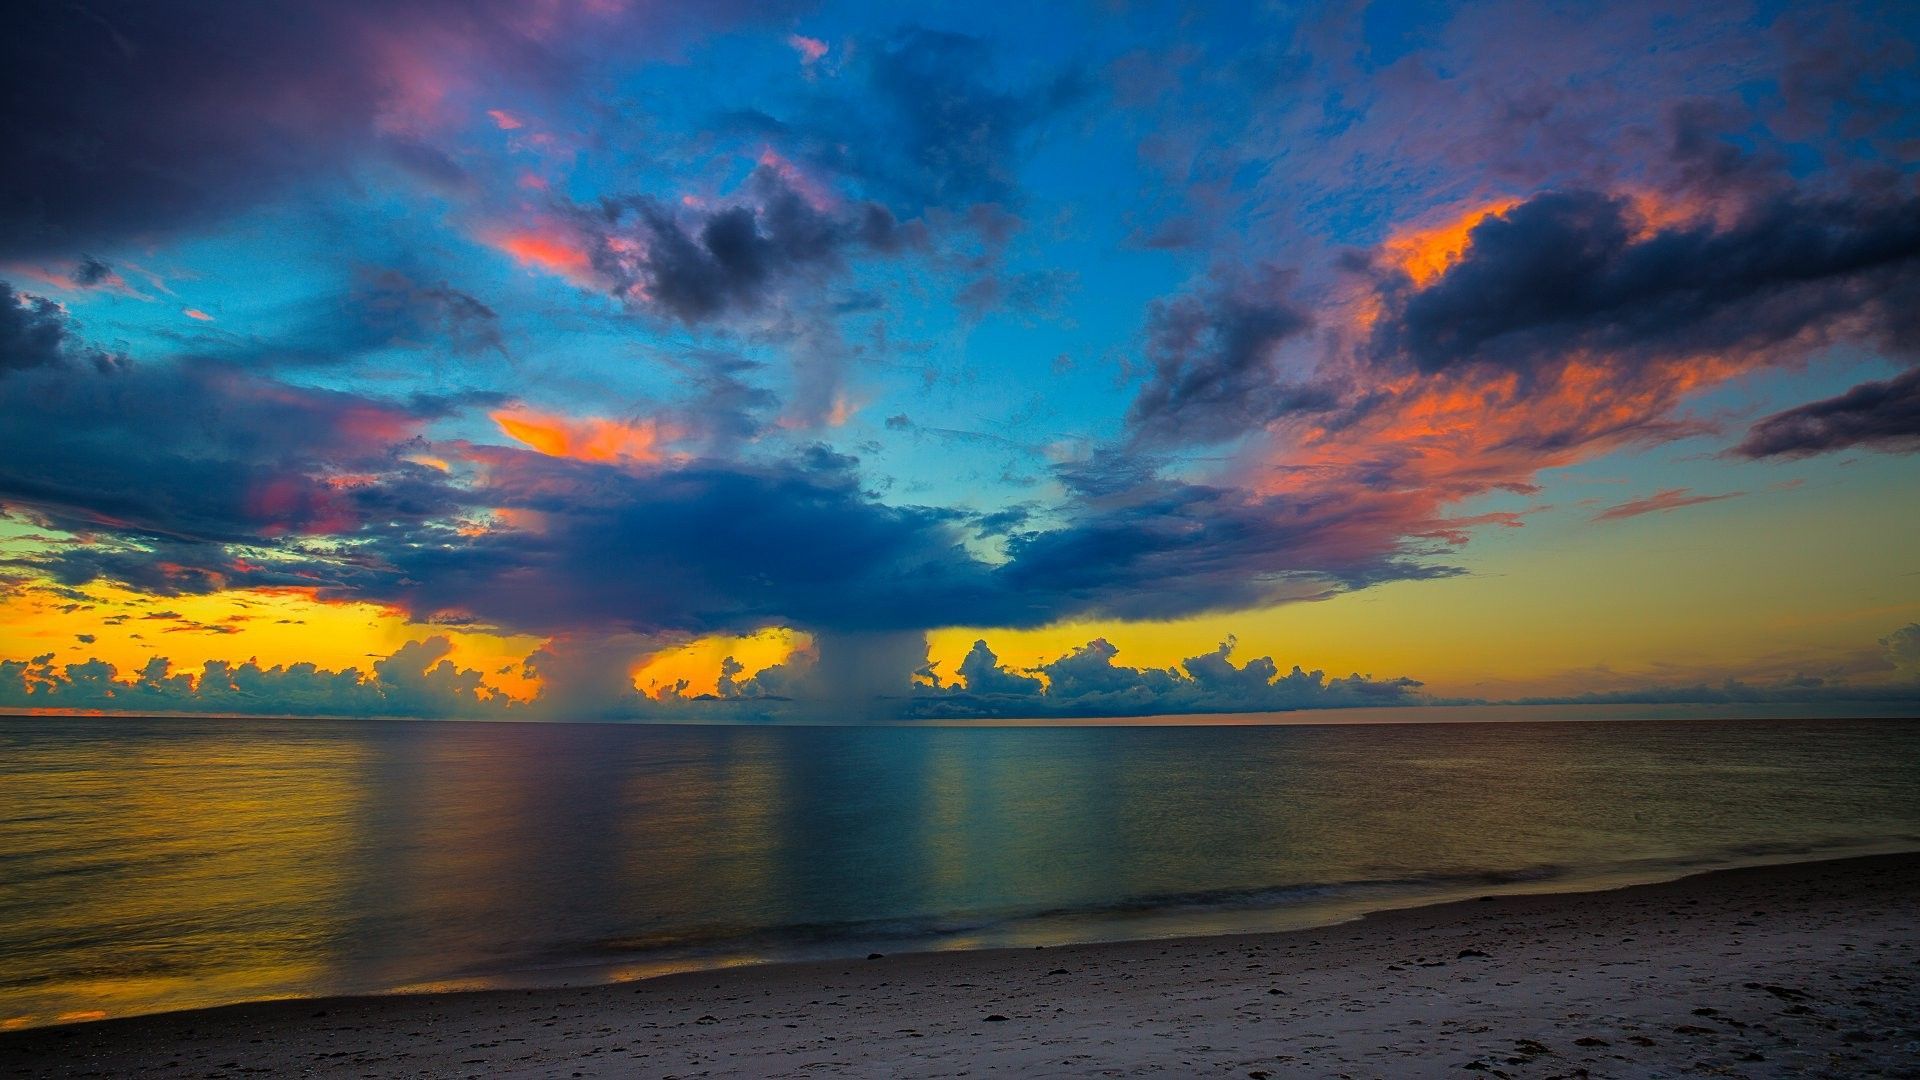 Florida Beach Sunset Wallpaper Free Florida Beach Sunset